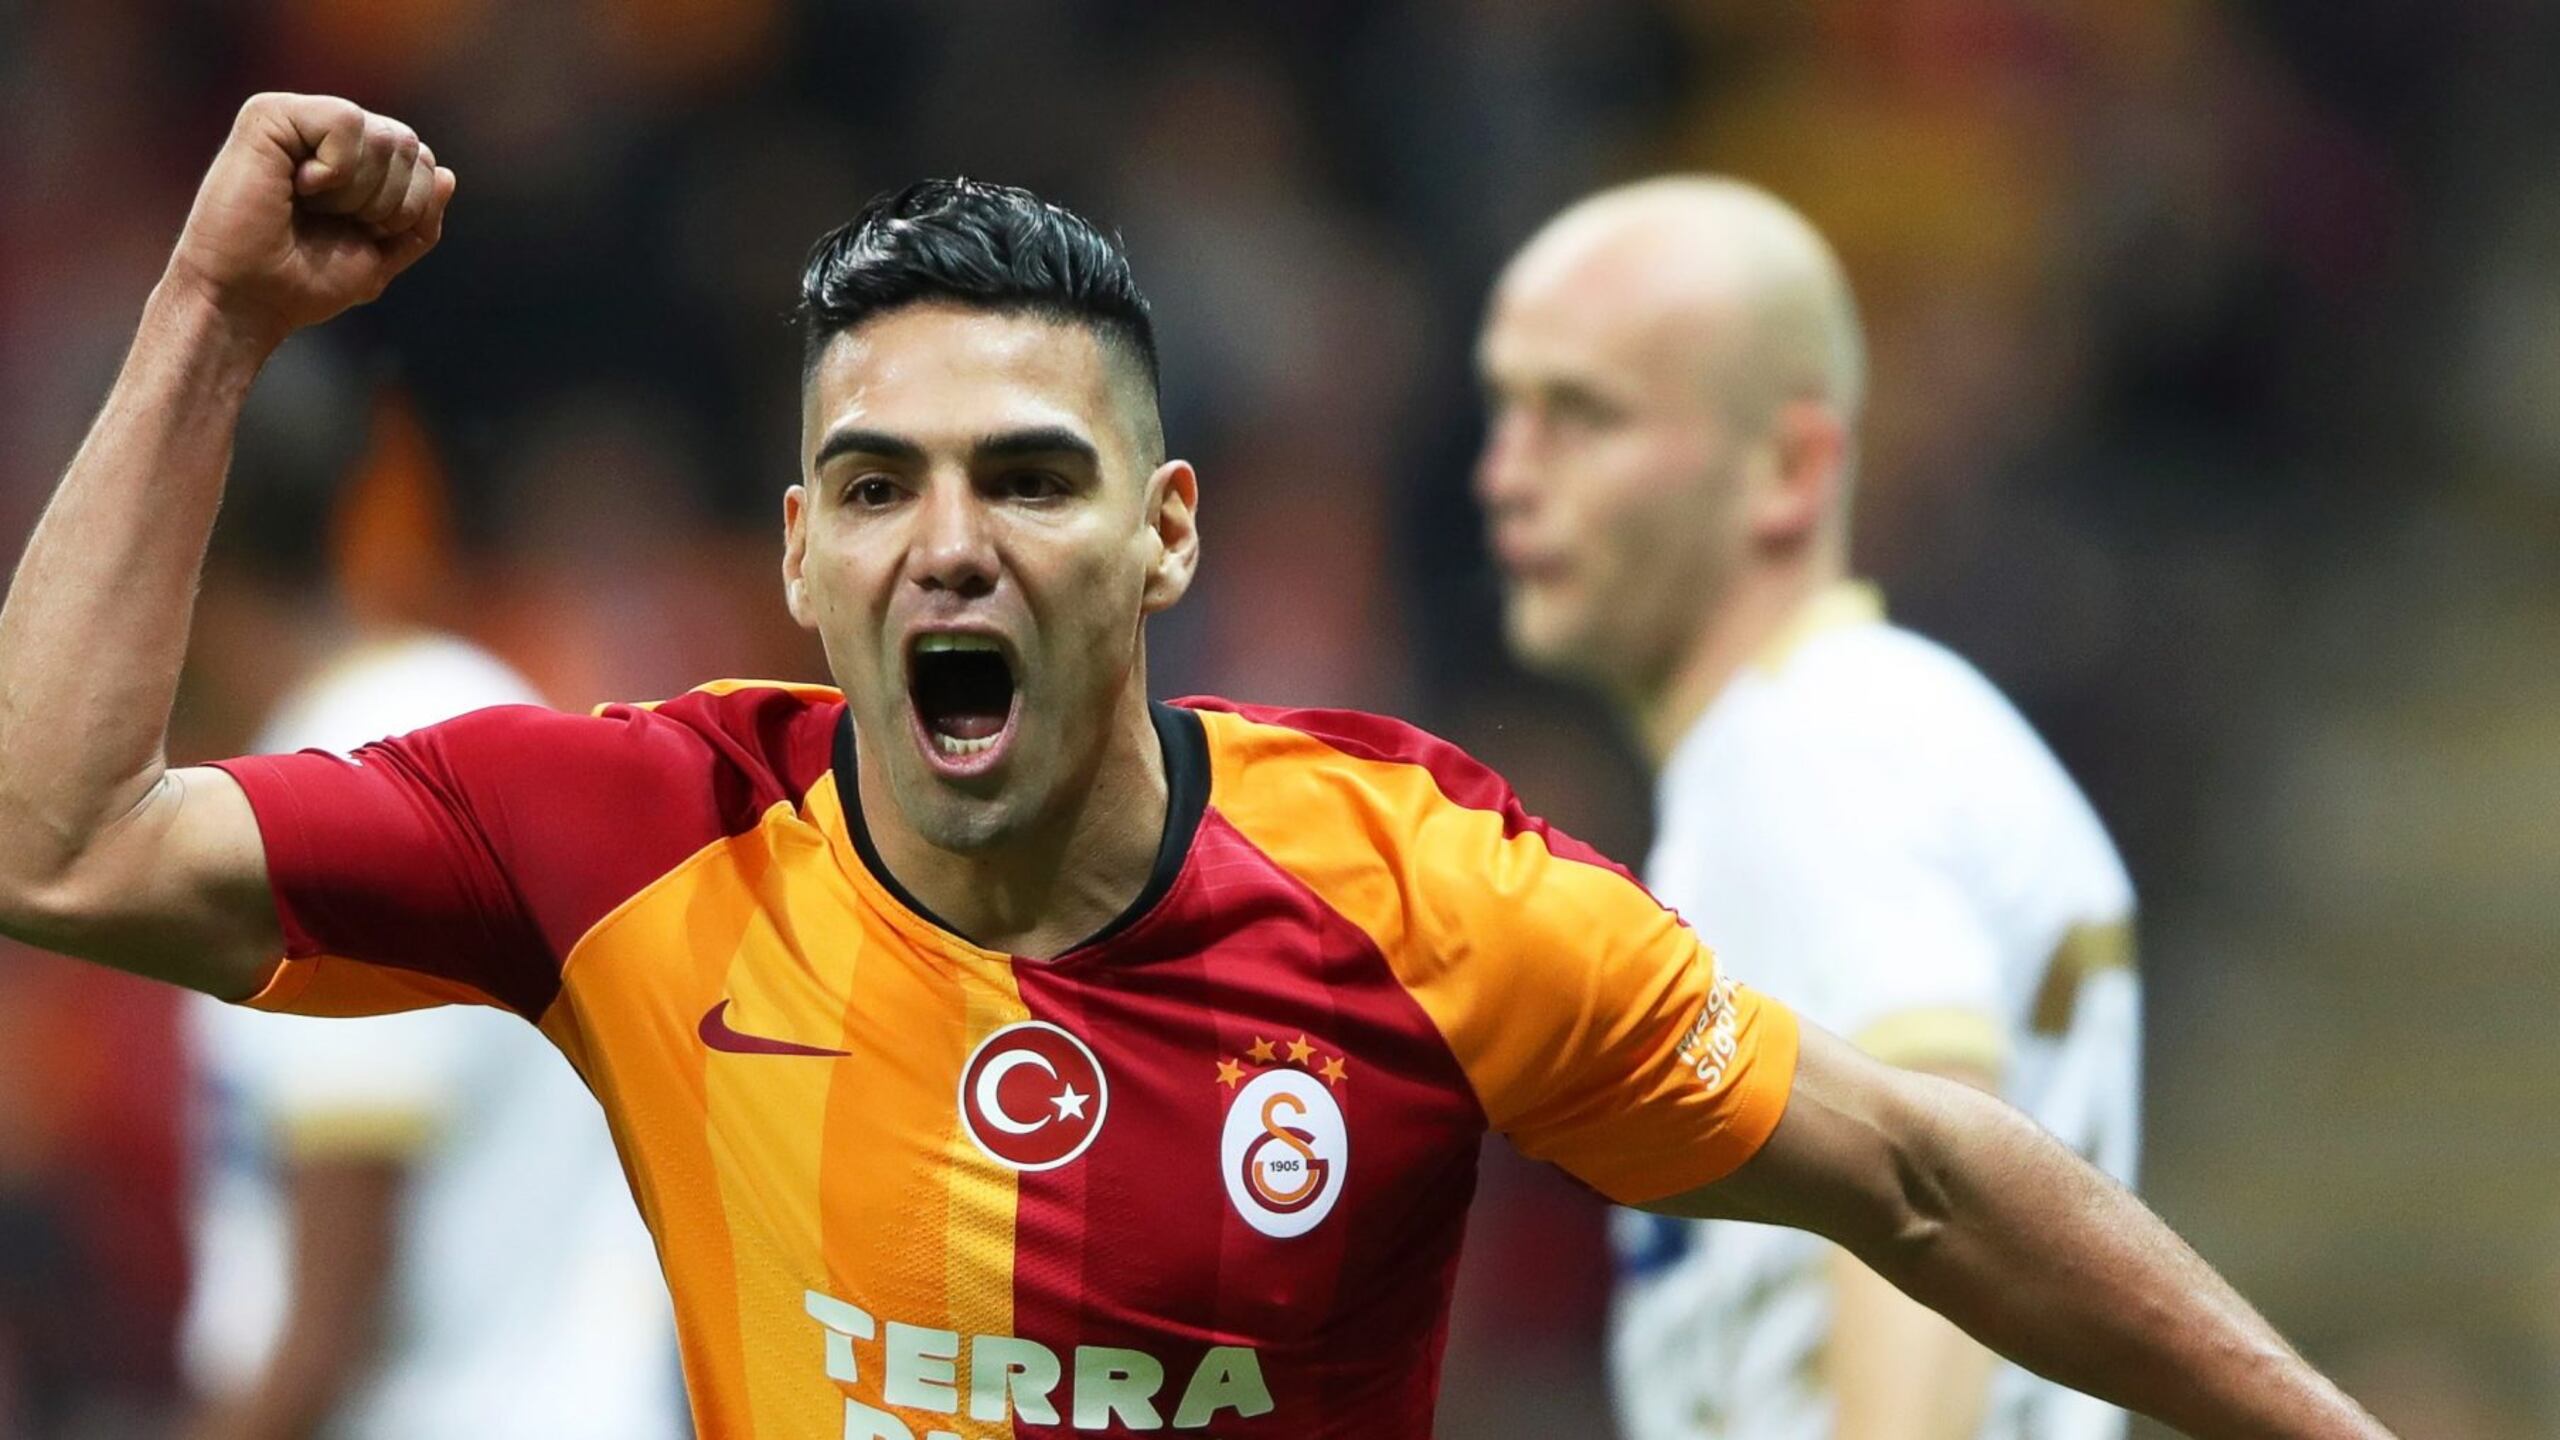 Video del Gol de Falcao al Kayserispor con Galatasaray en Turquía